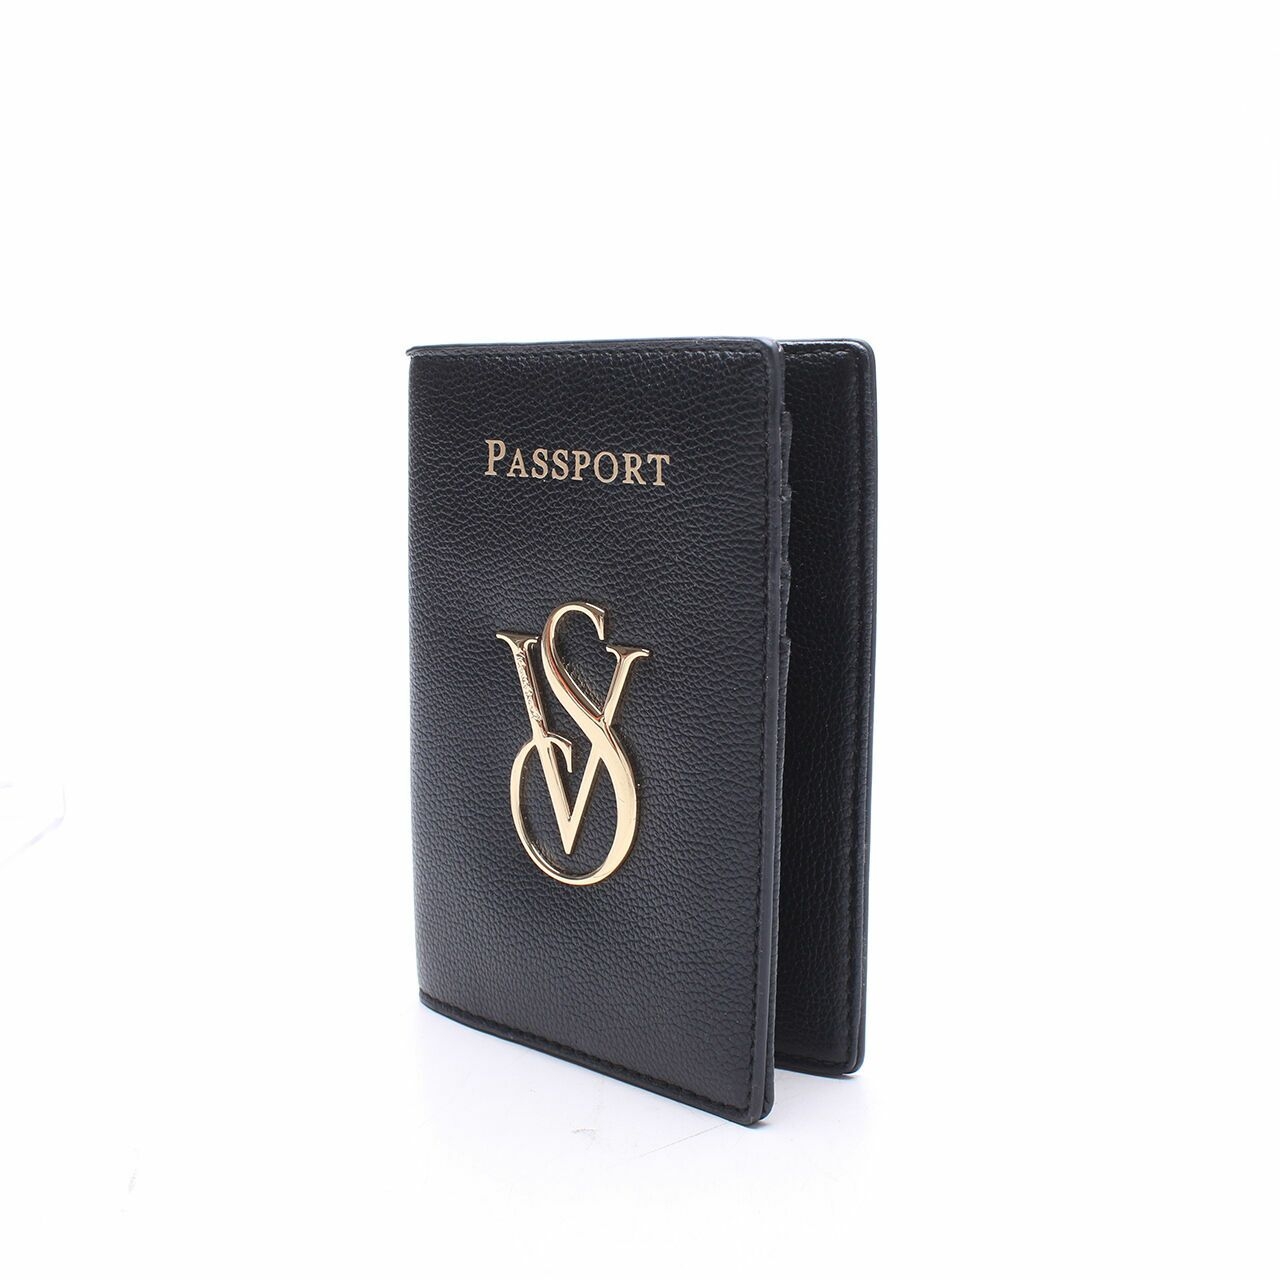 Victoria Secret Black Passpord Holder Wallet